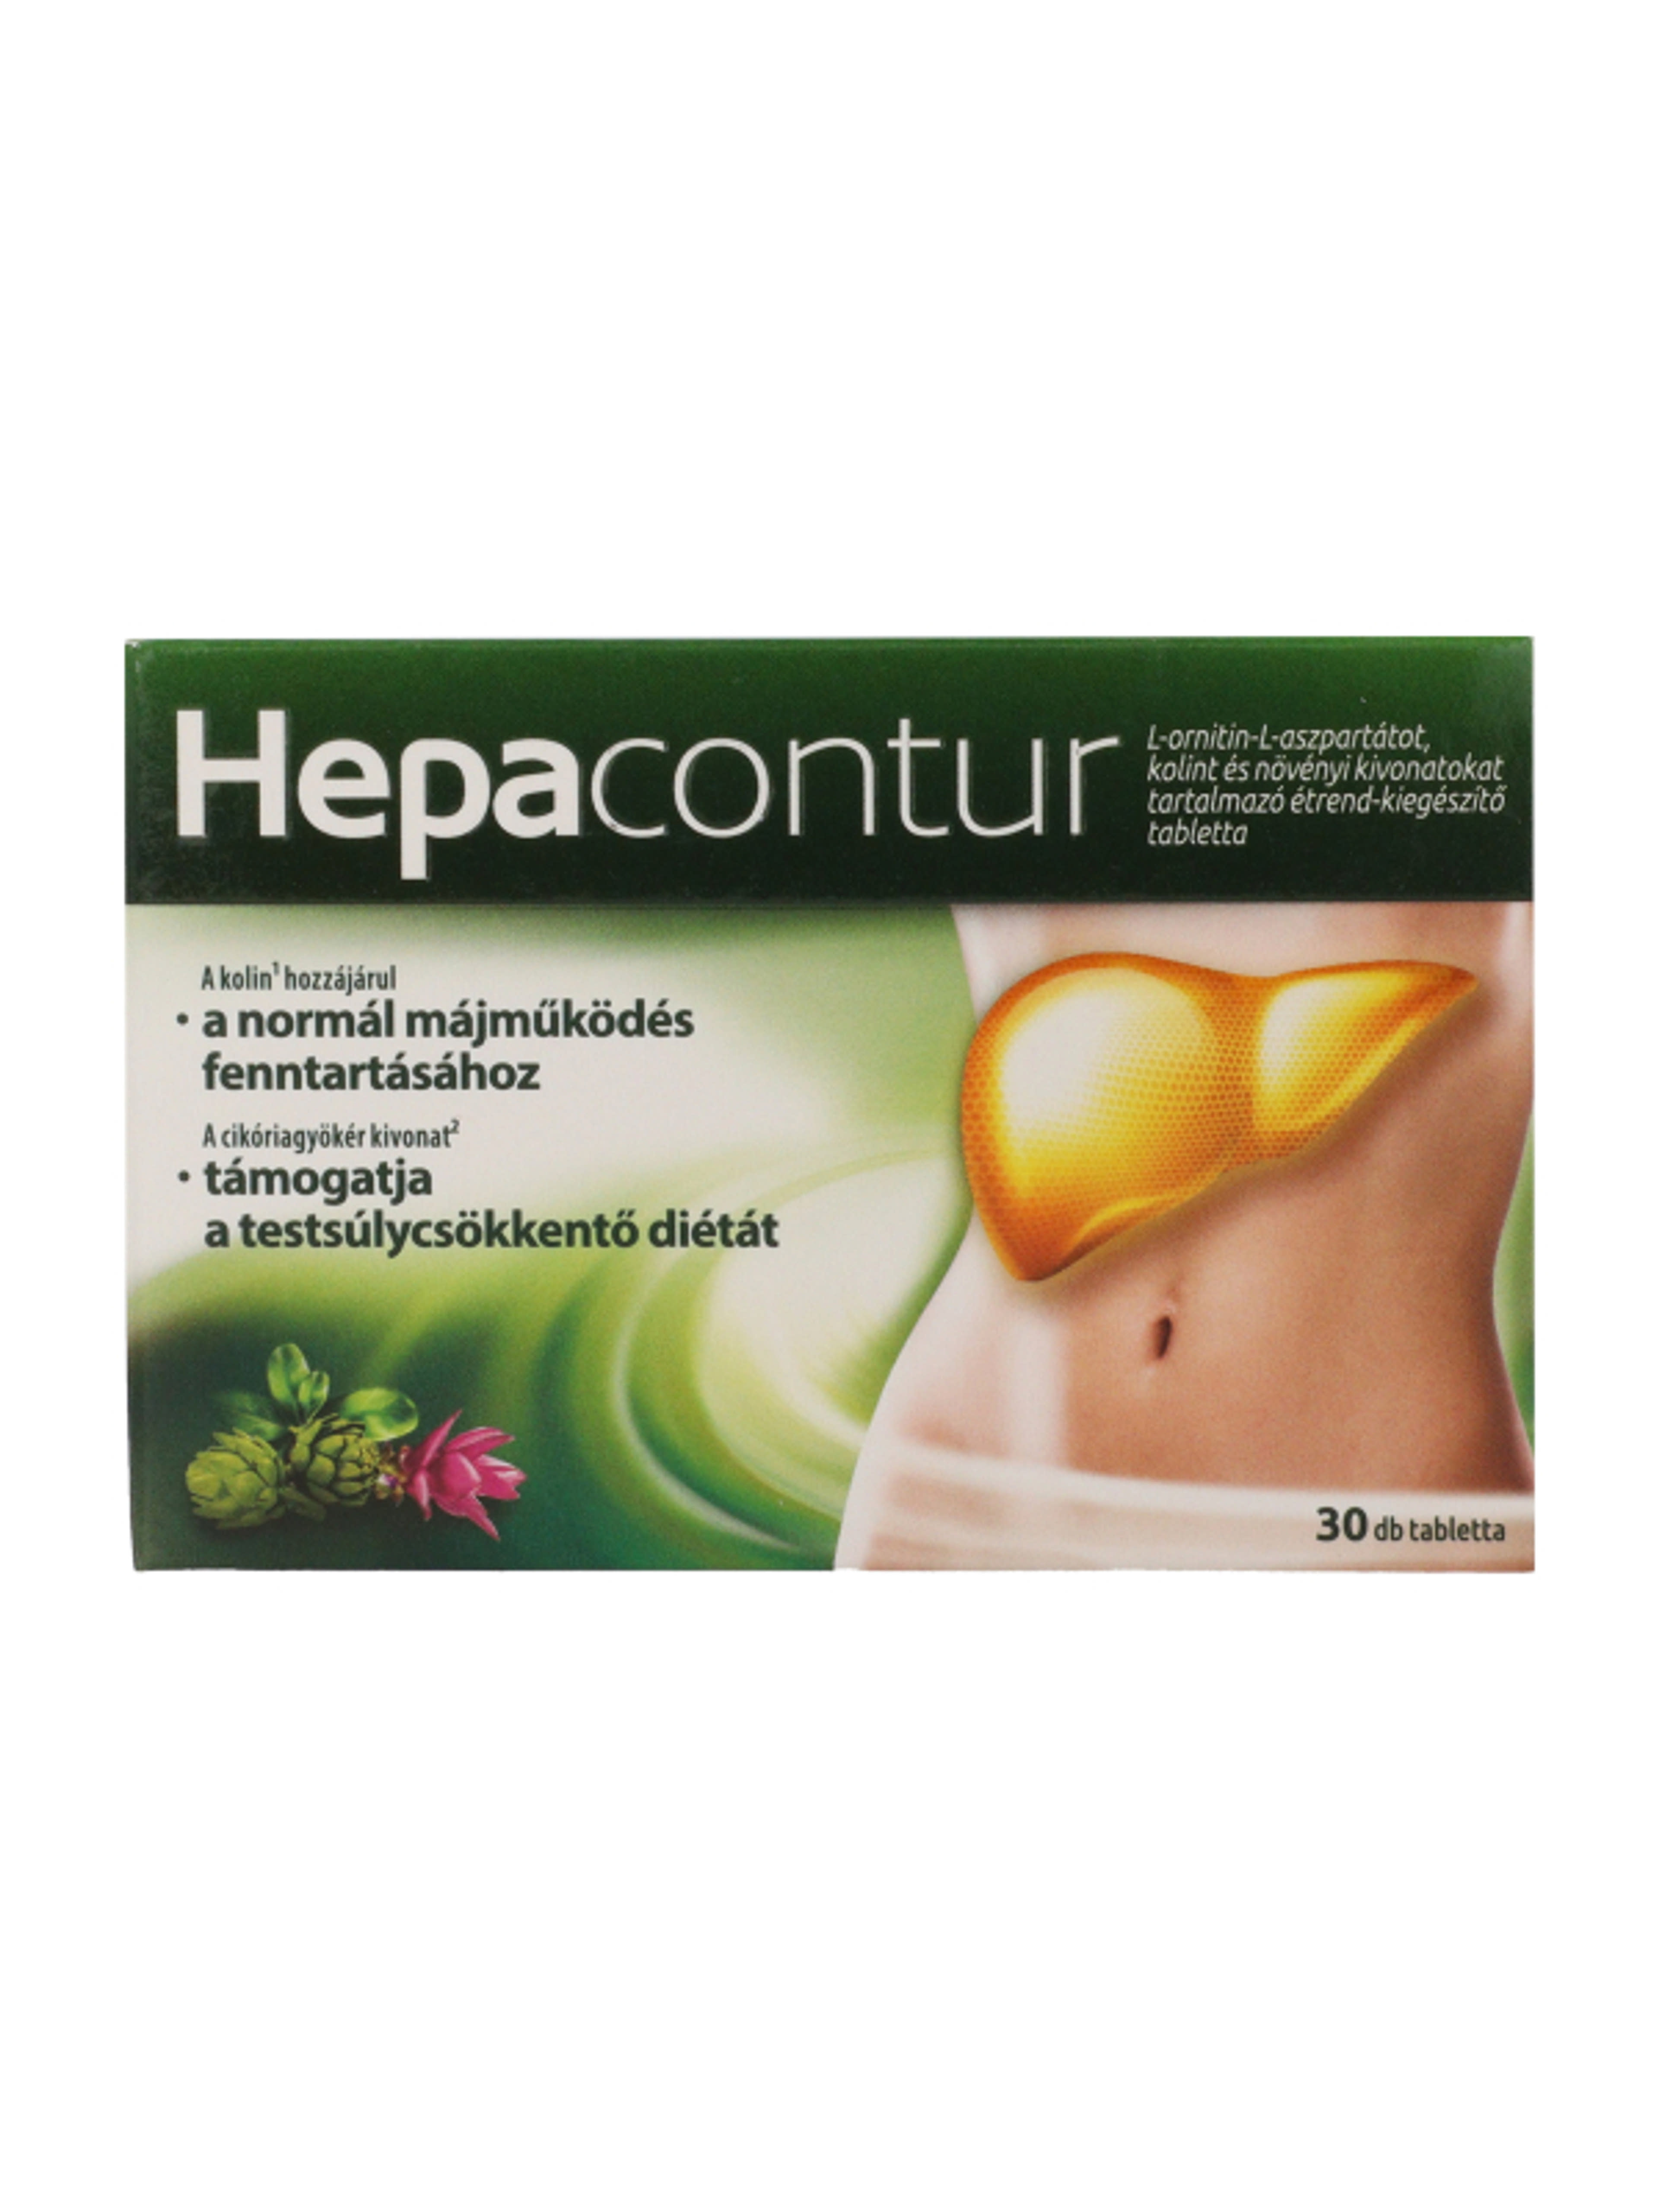 Hepacontur étrend-kiegészítő tabletta - 30 db-2